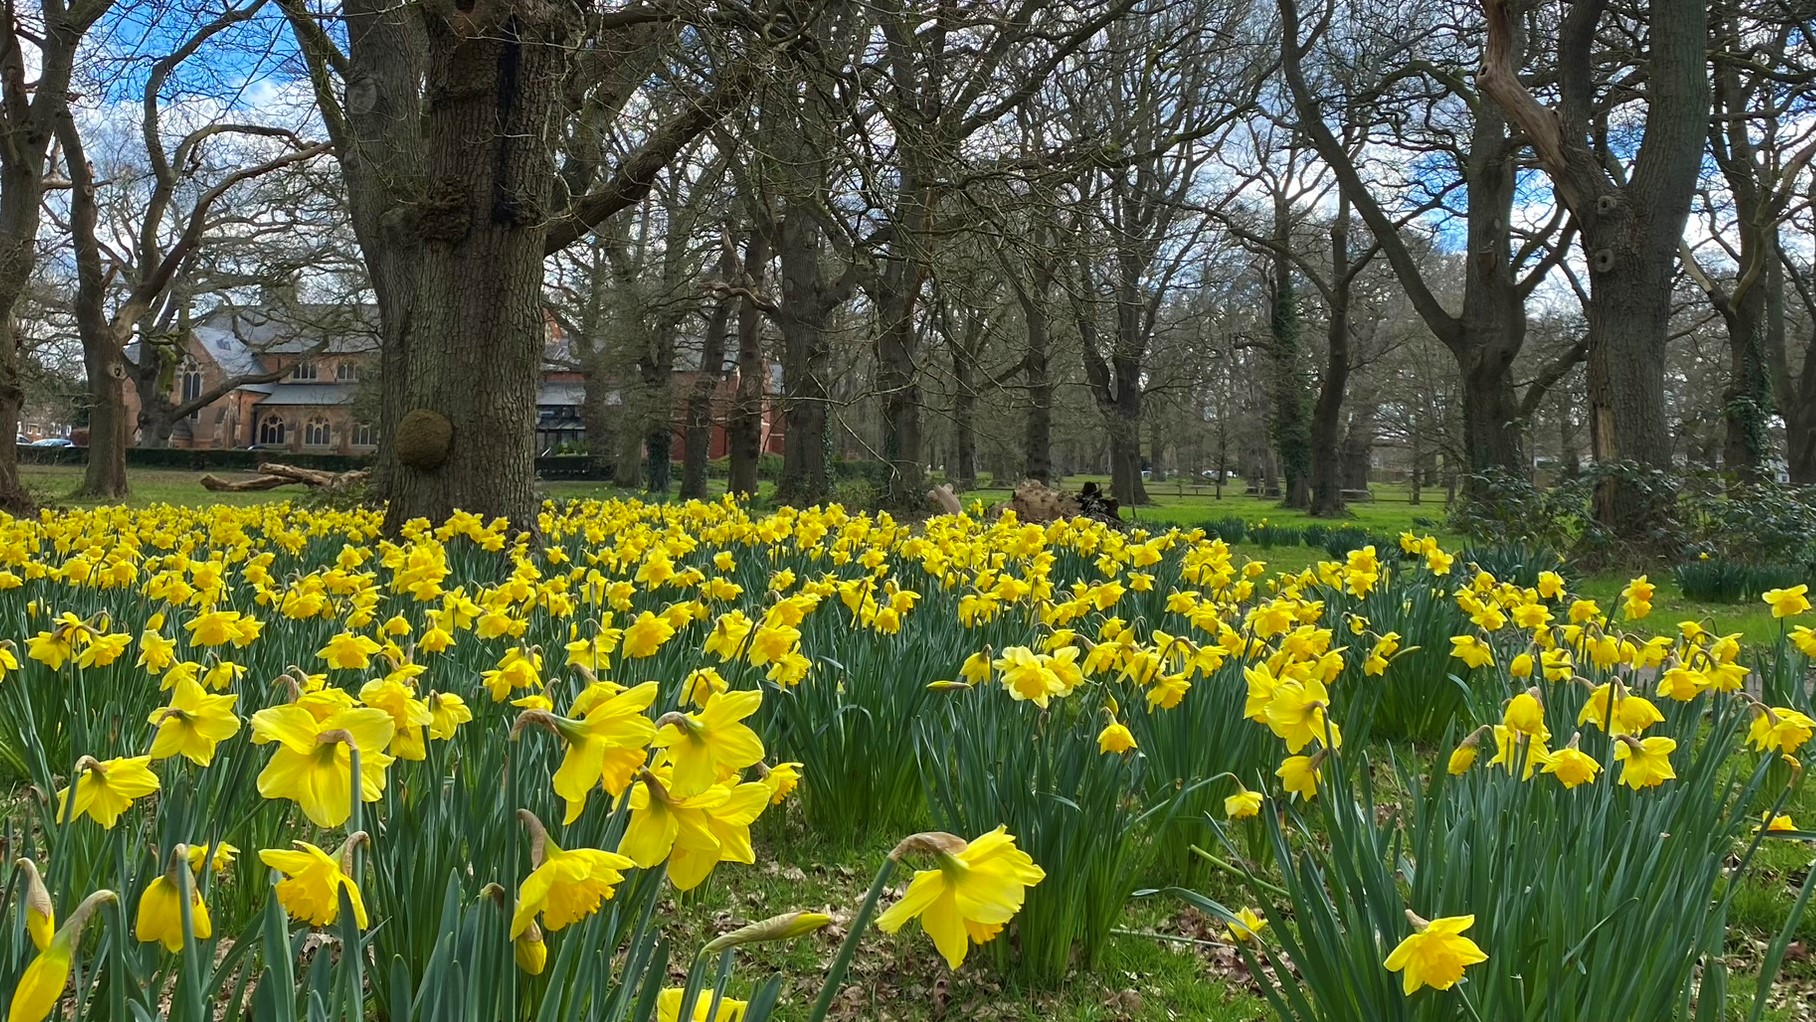 Yellow daffodils in woodland setting